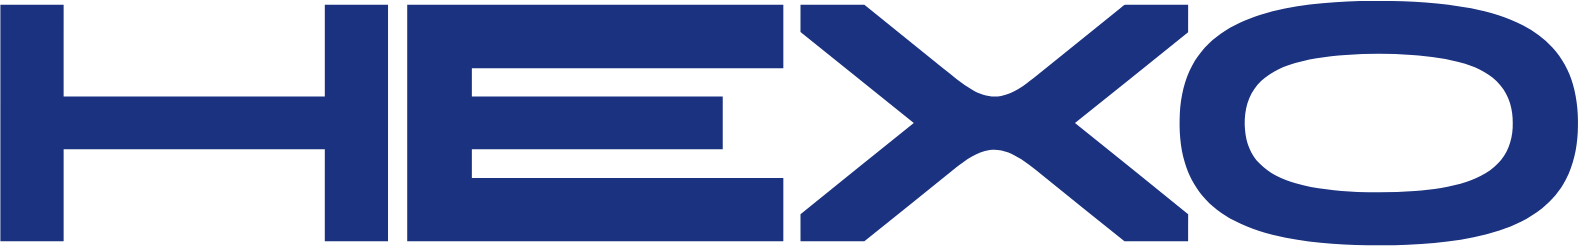 HEXO logo (transparent PNG)